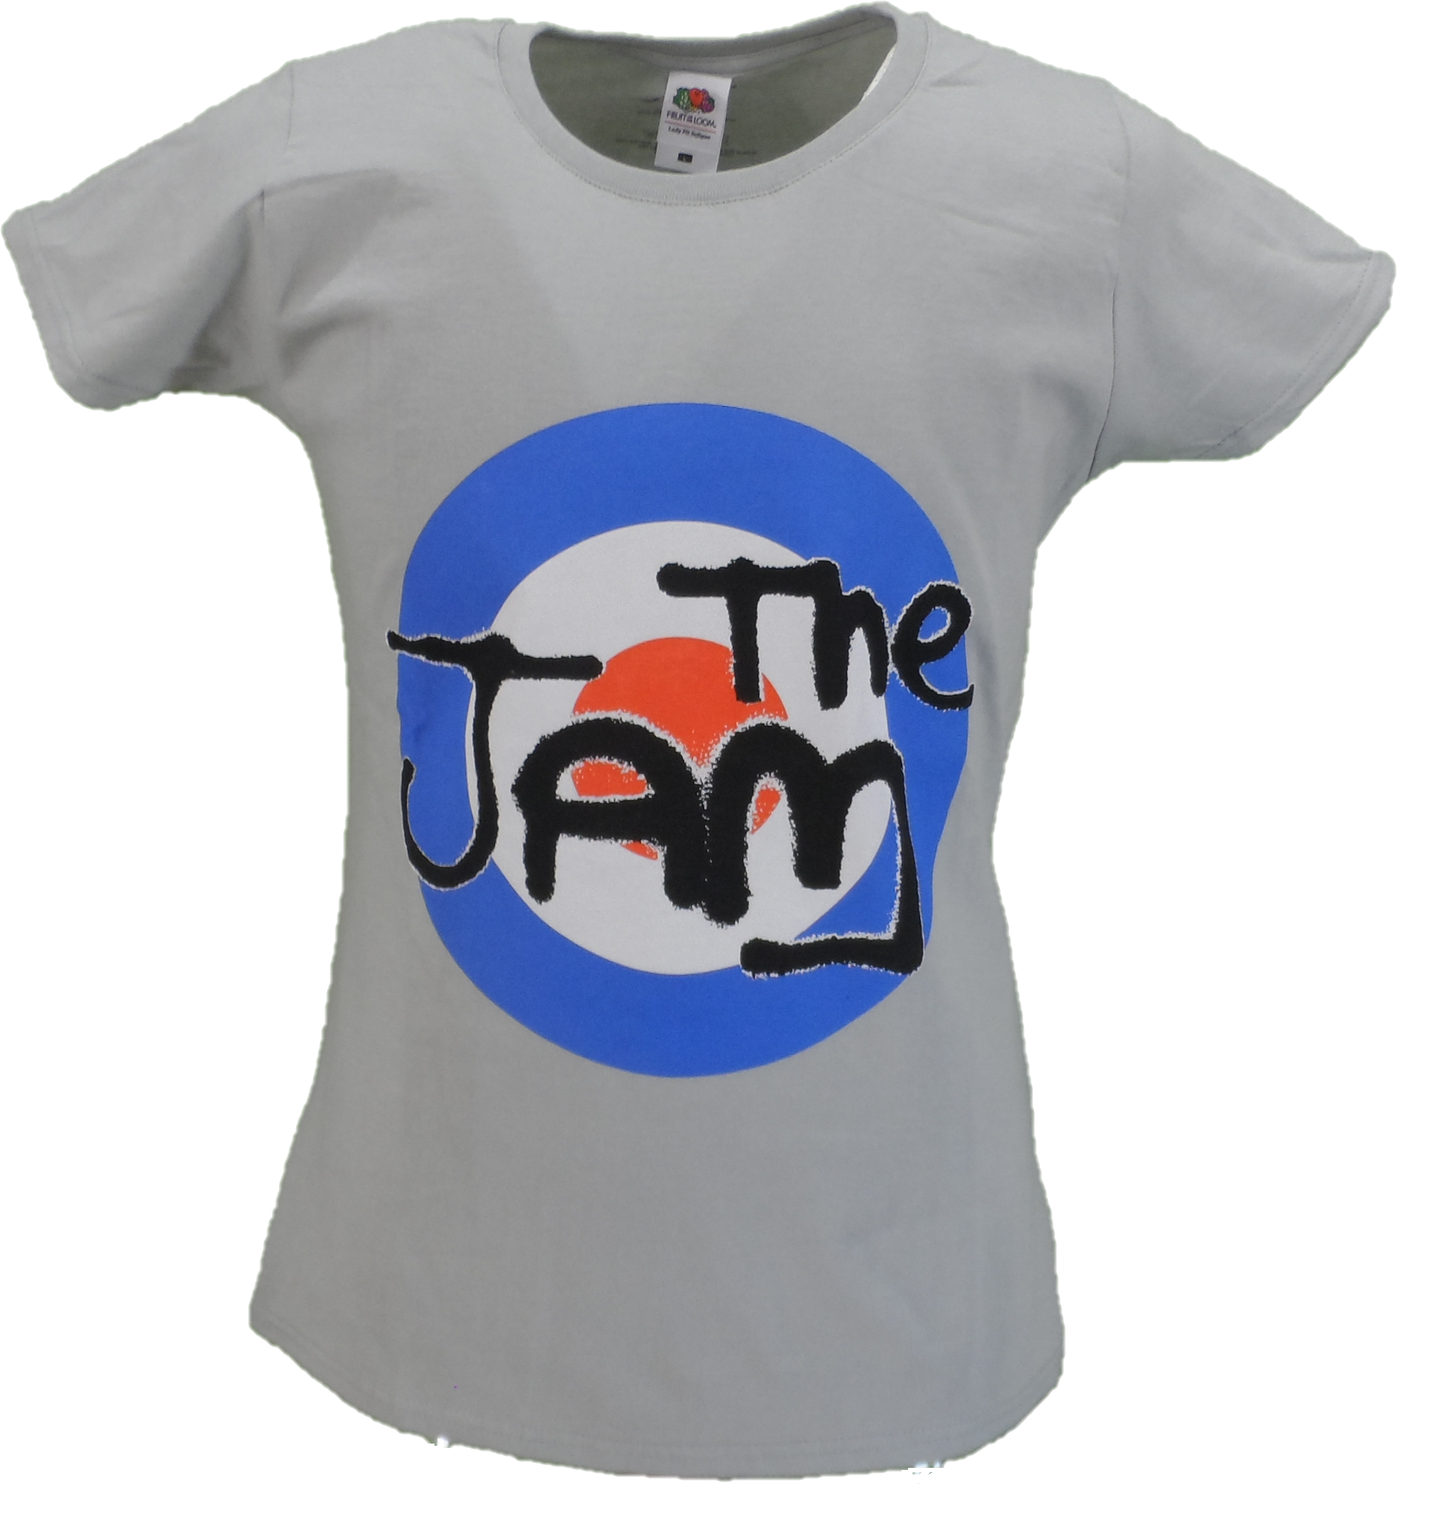 Magliette The Jam grigie da donna con licenza ufficiale